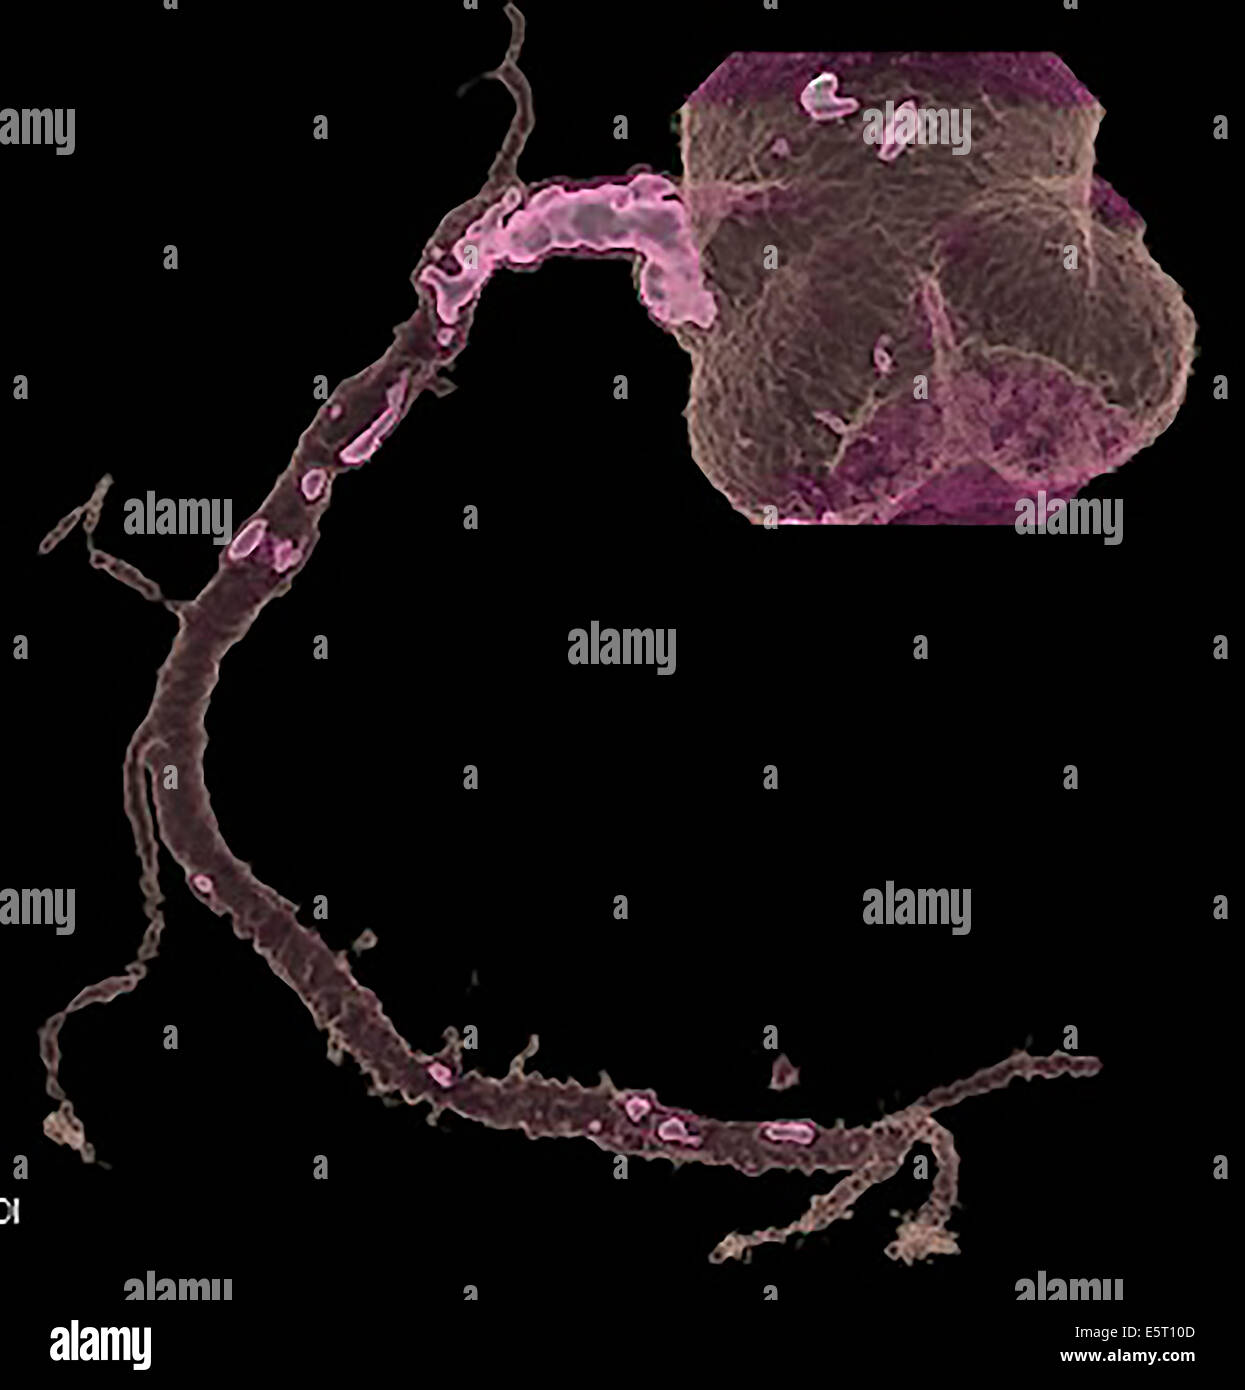 3 colorato-D tomografia computerizzata (CT) Scansione del cuore che mostra una stenosi di una arteria coronaria ristretta di arteriosclerotico Foto Stock